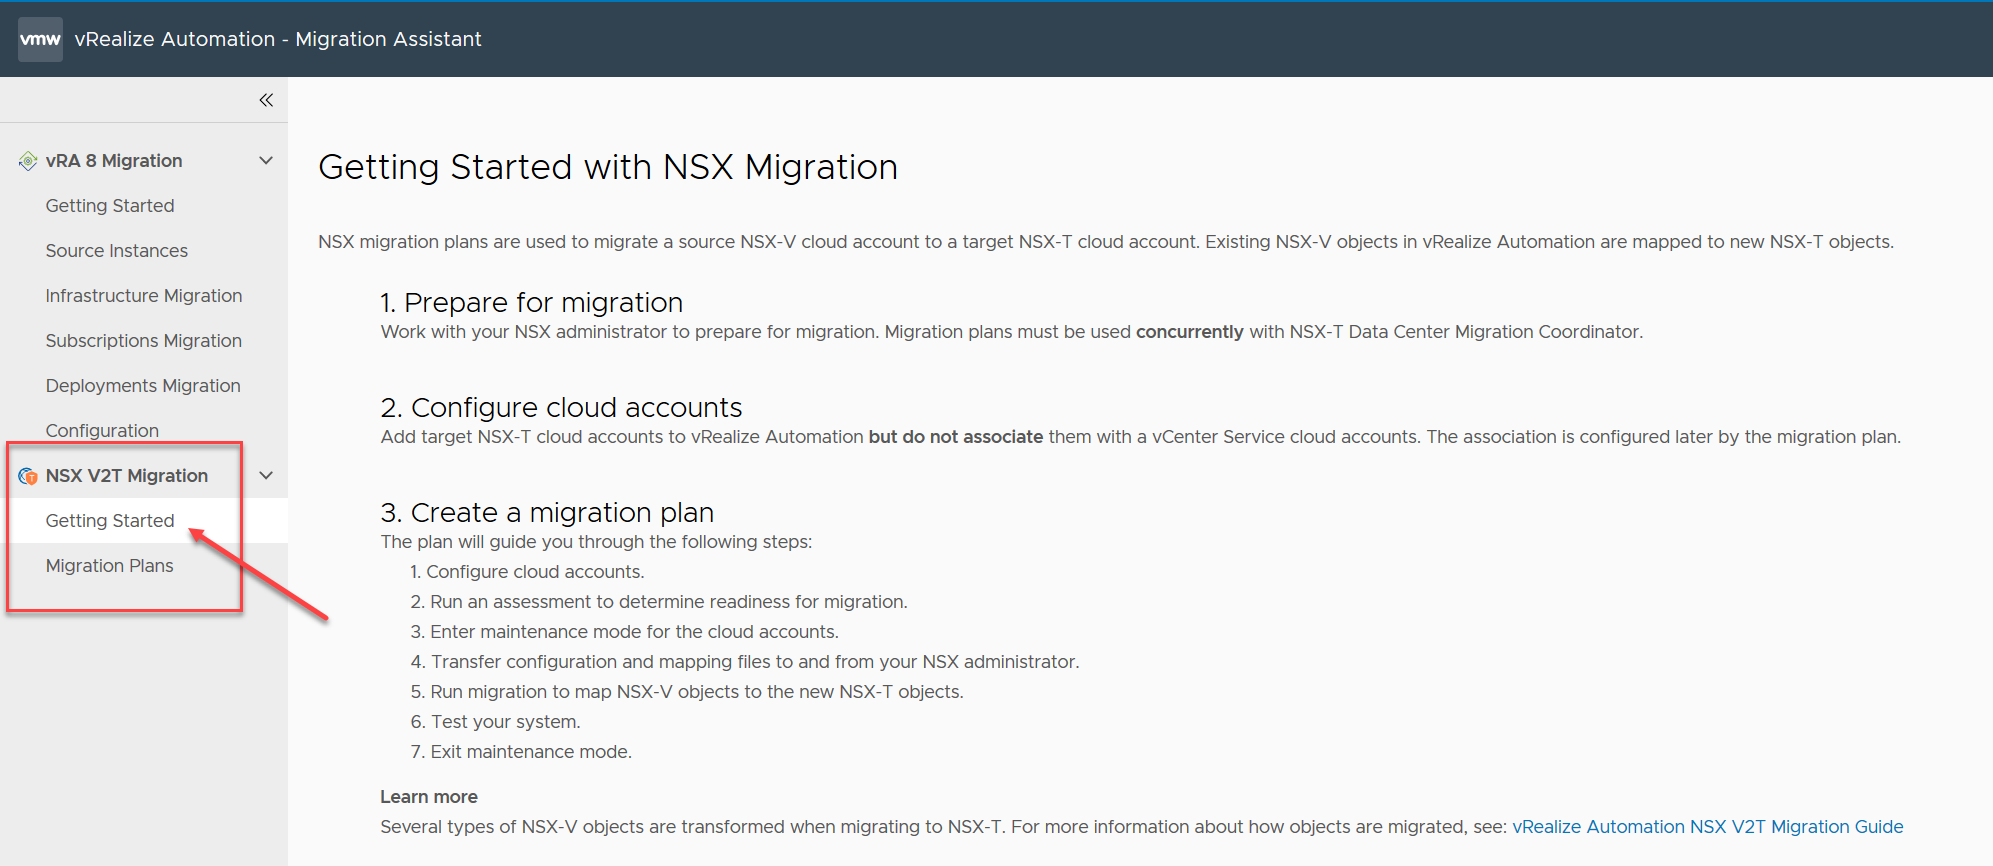 Captura de pantalla de la página de destino de vRealize Automation con la pestaña Servicios y el mosaico del asistente de migración de vRA resaltados.